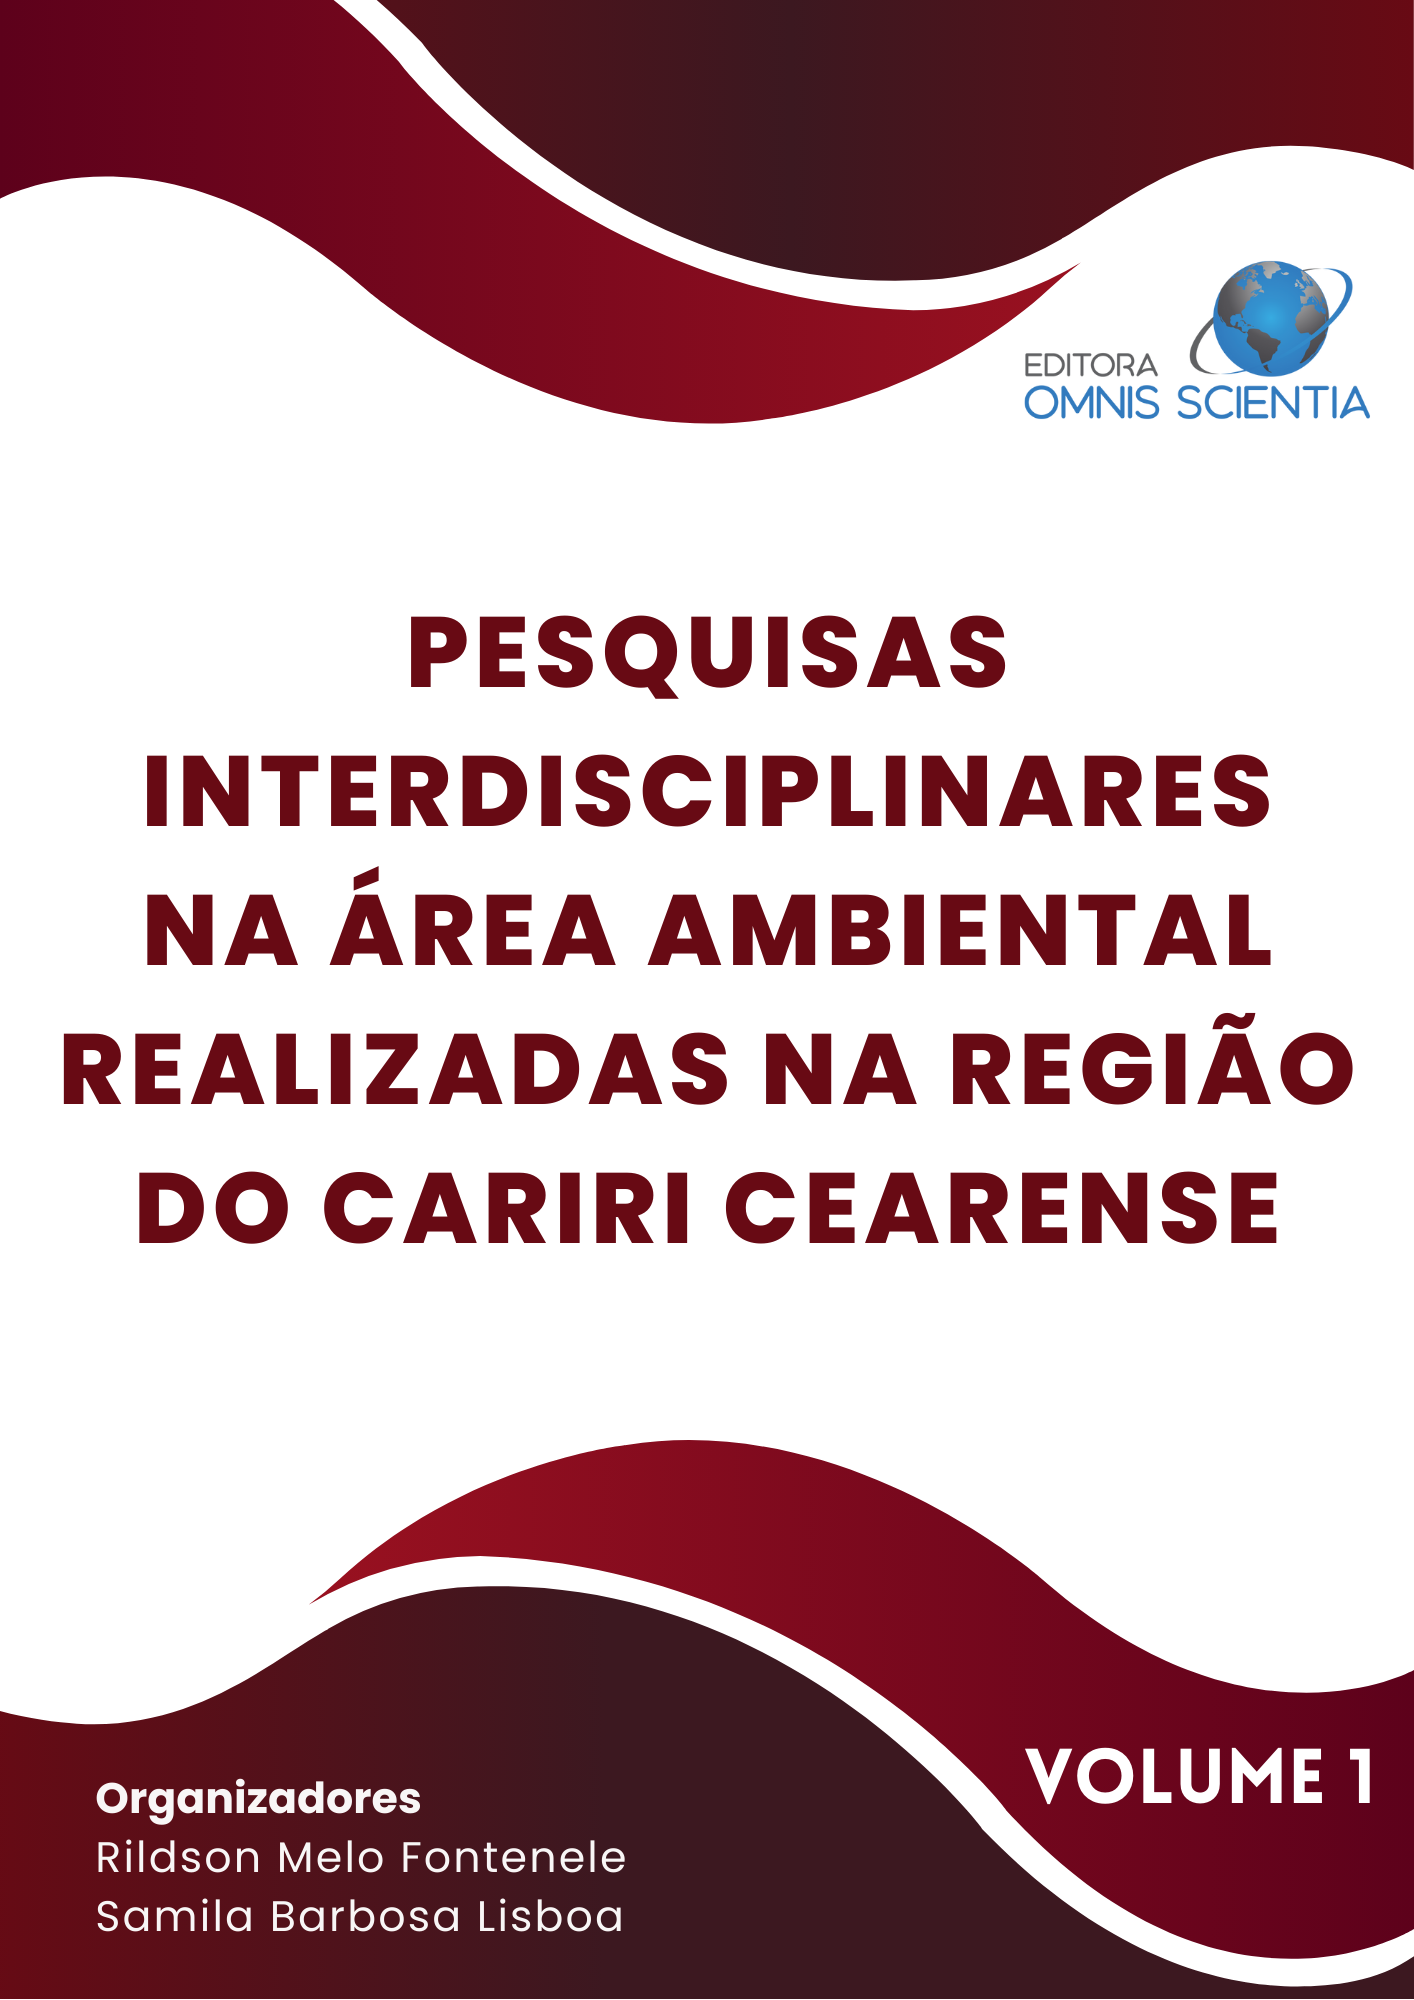 PESQUISAS INTERDISCIPLINARES NA ÁREA AMBIENTAL REALIZADAS NA REGIÃO DO CARIRI CEARENSE